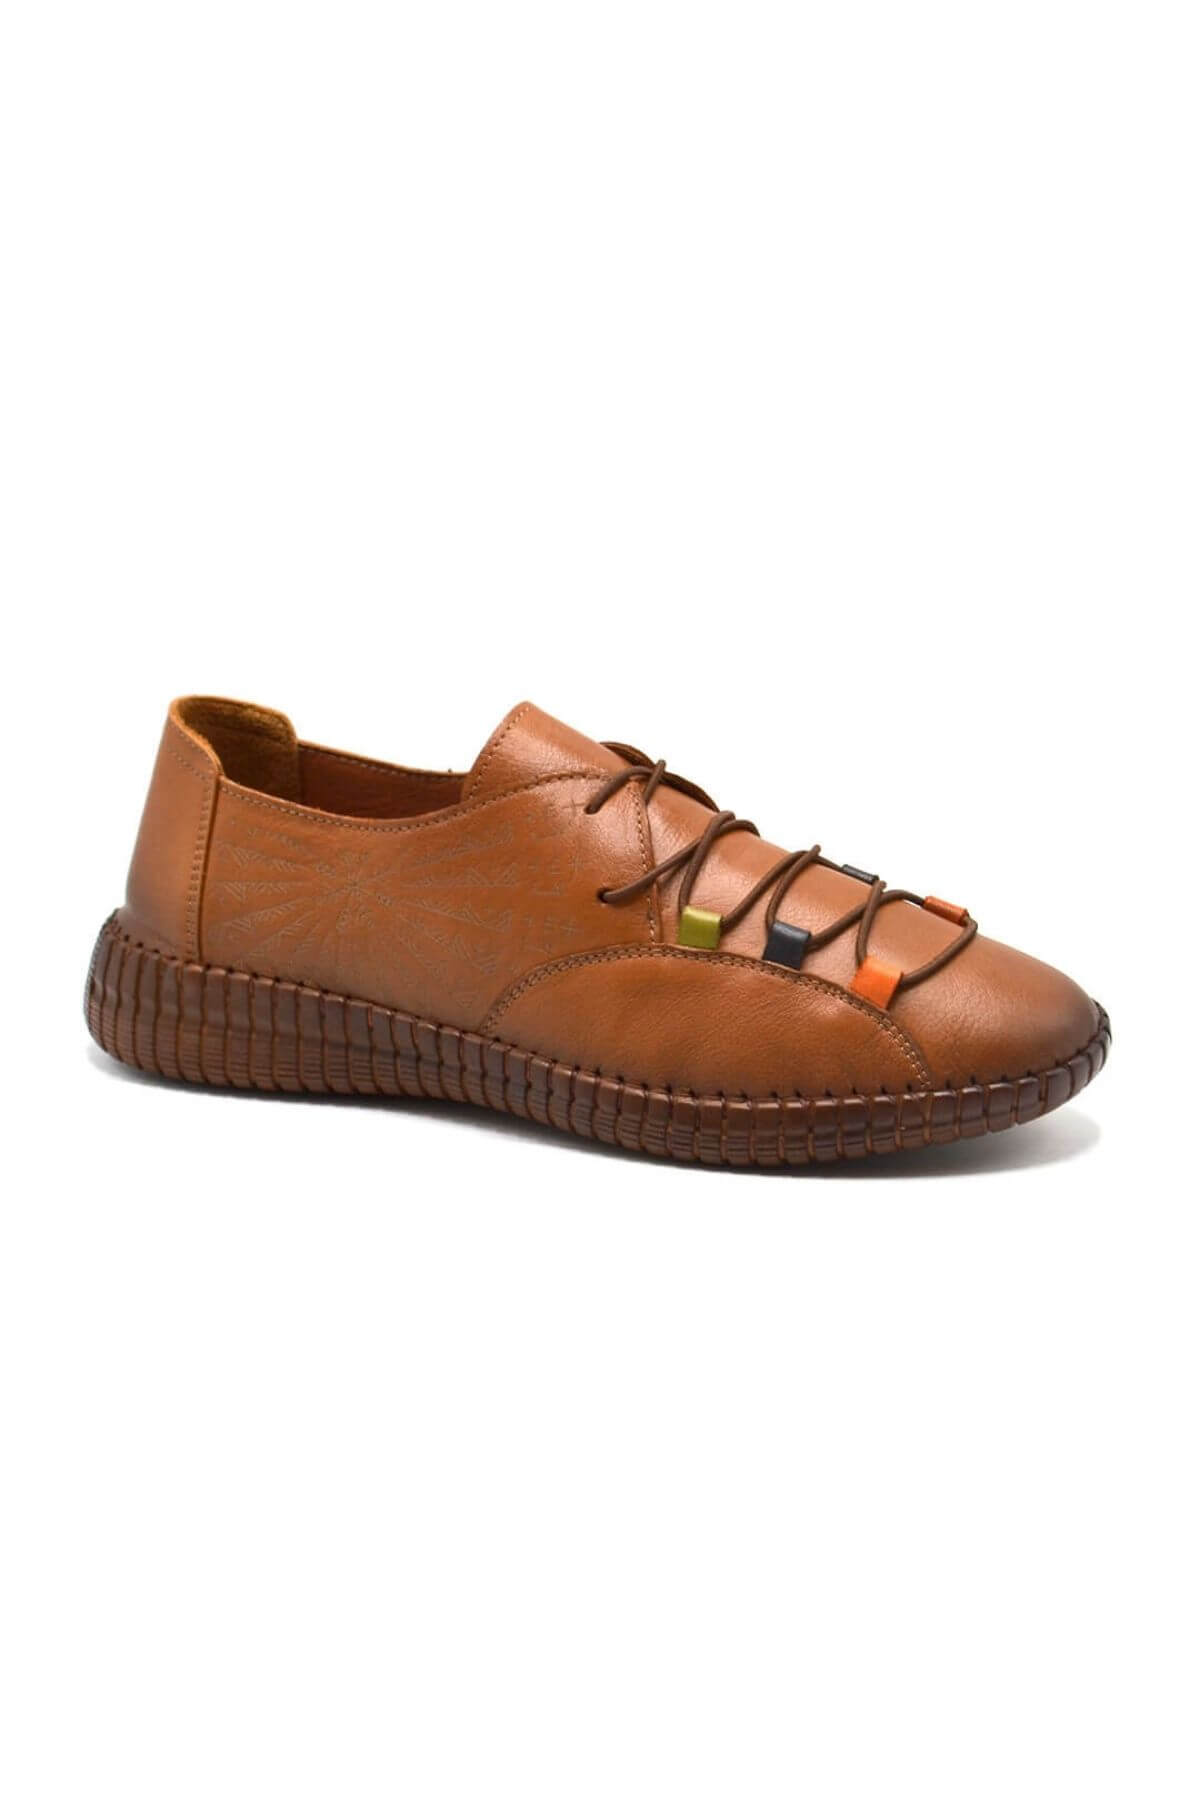 Kadın Comfort Bağcıklı Deri Ayakkabı Taba 24370001Y - Thumbnail